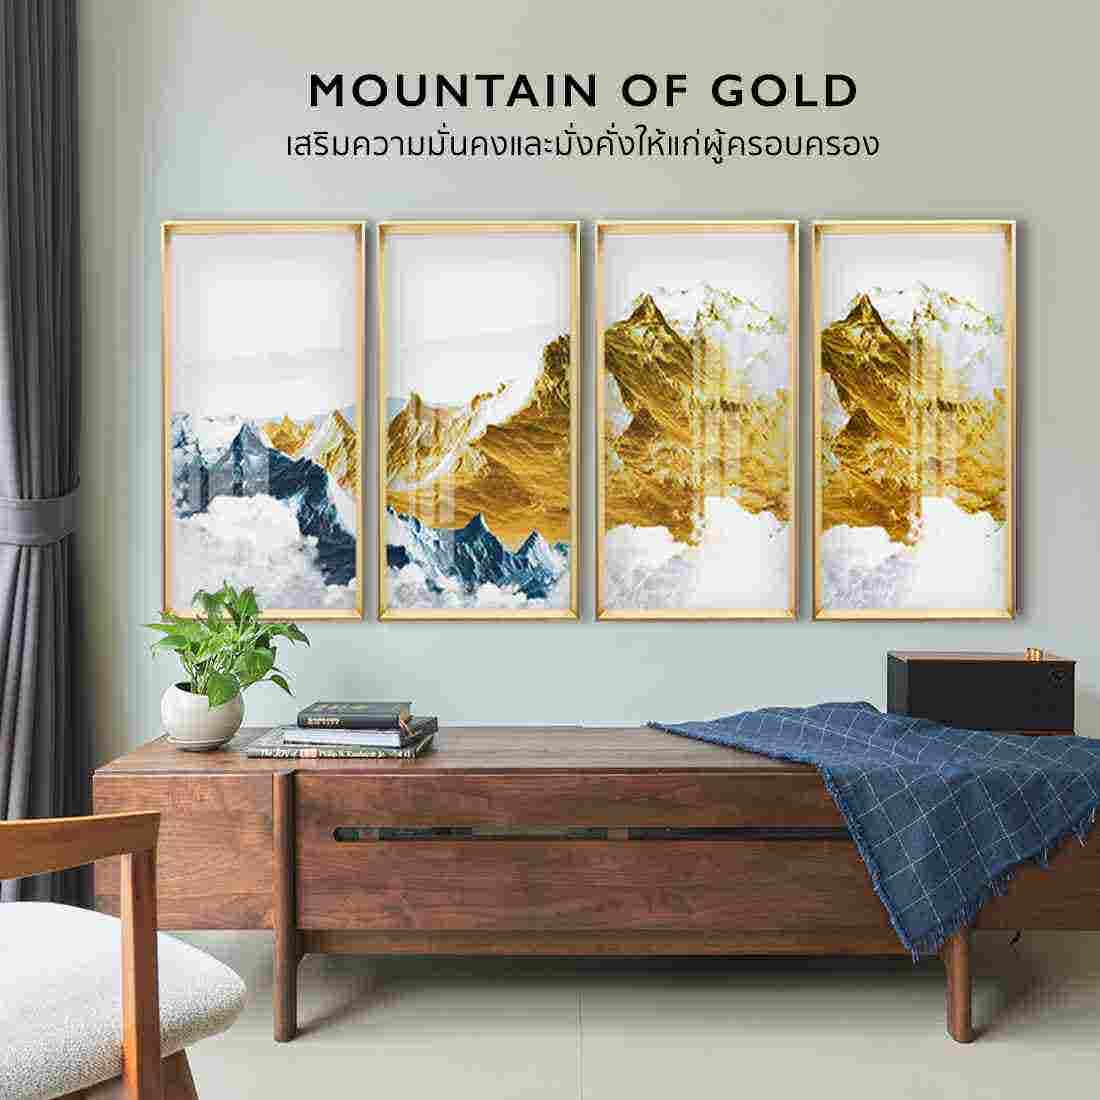 รูปพร้อมกรอบ Doseart รุ่น Mountain of Gold Frame D02 176x84 cm-01